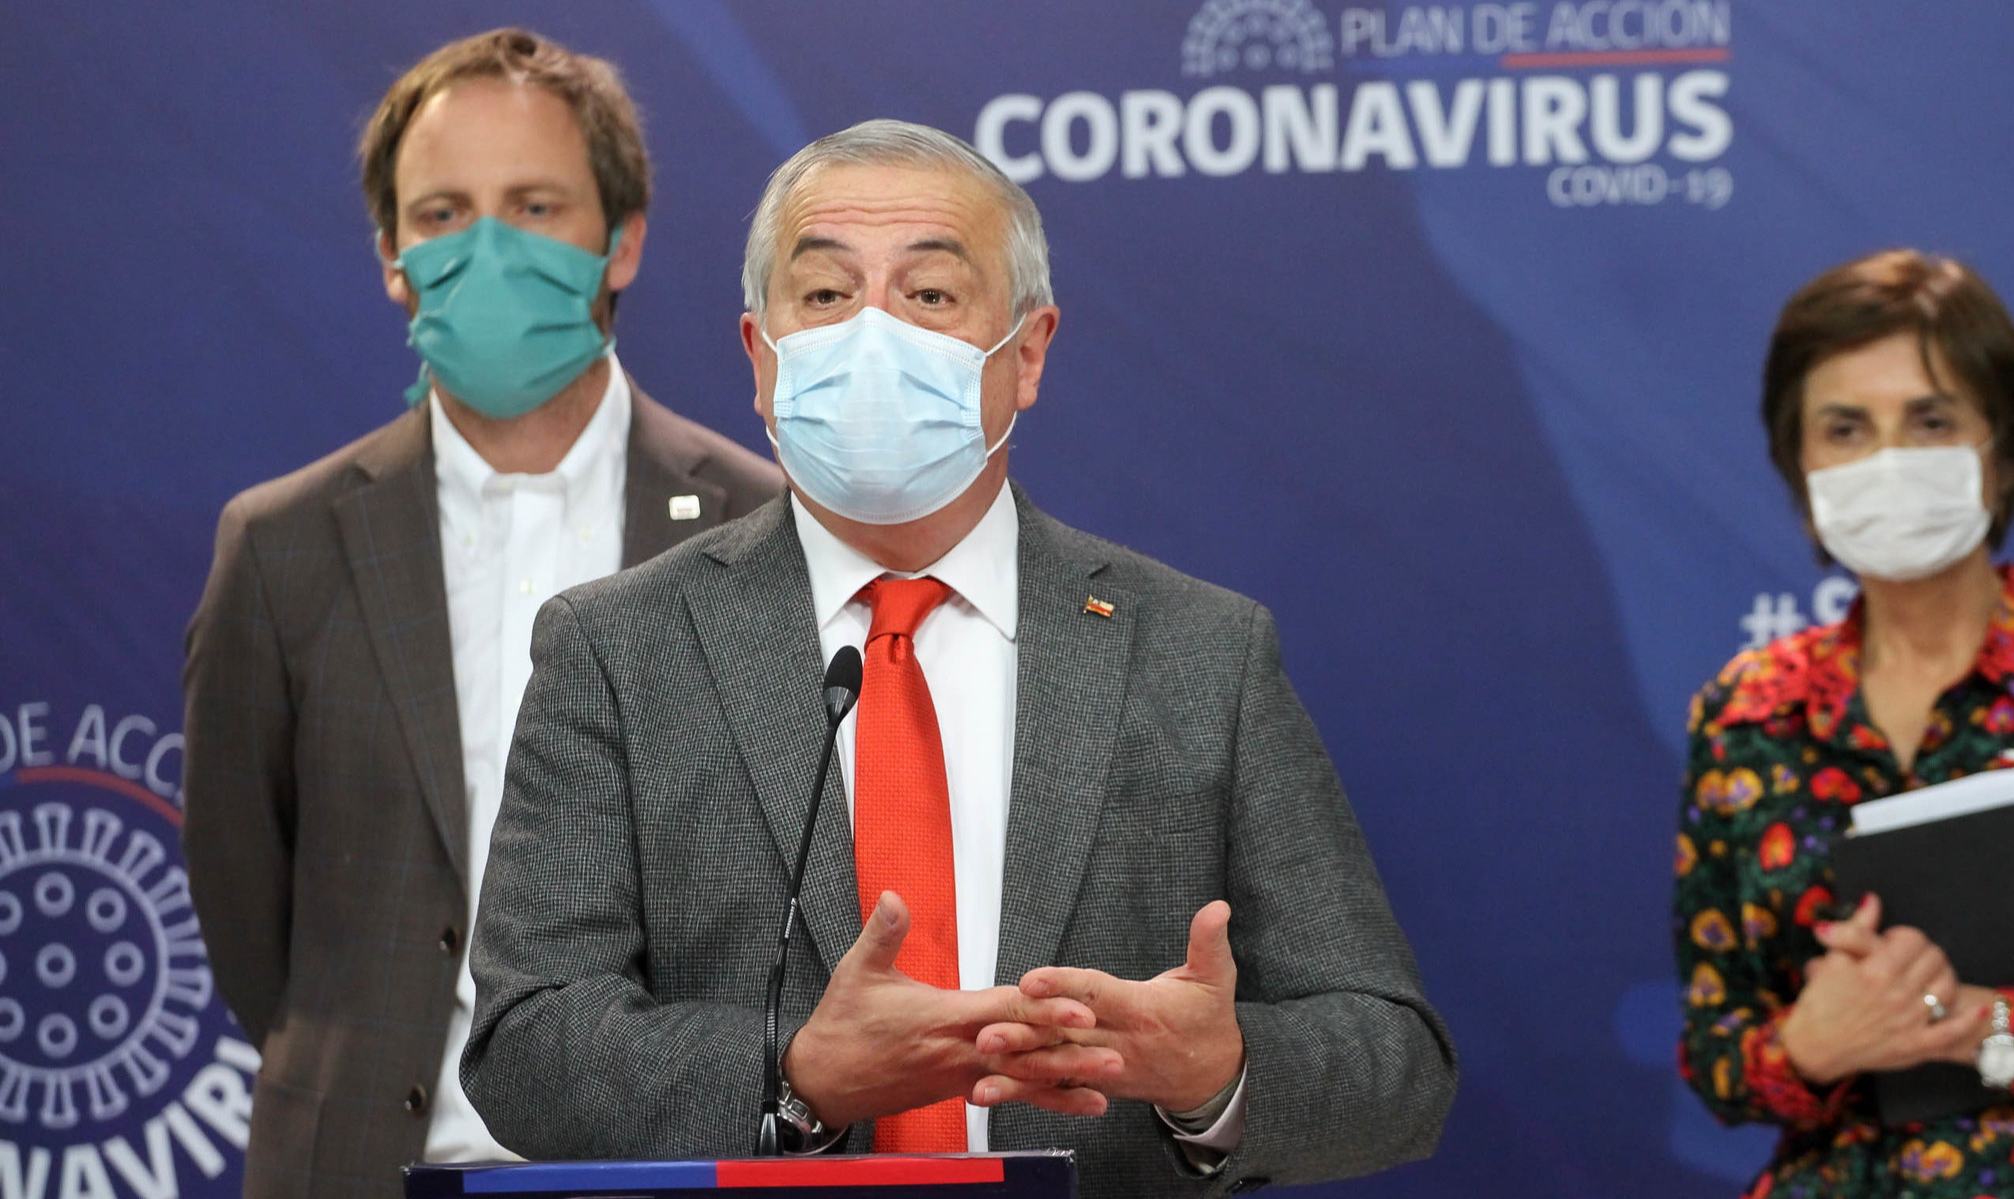 Sites de notícia chilenos afirmam que foi o presidente Sebastián Piñera quem resolveu demitir o ministro, depois da má repercussão sobre nova metodologia para contabilizar as mortes por coronavírus no país